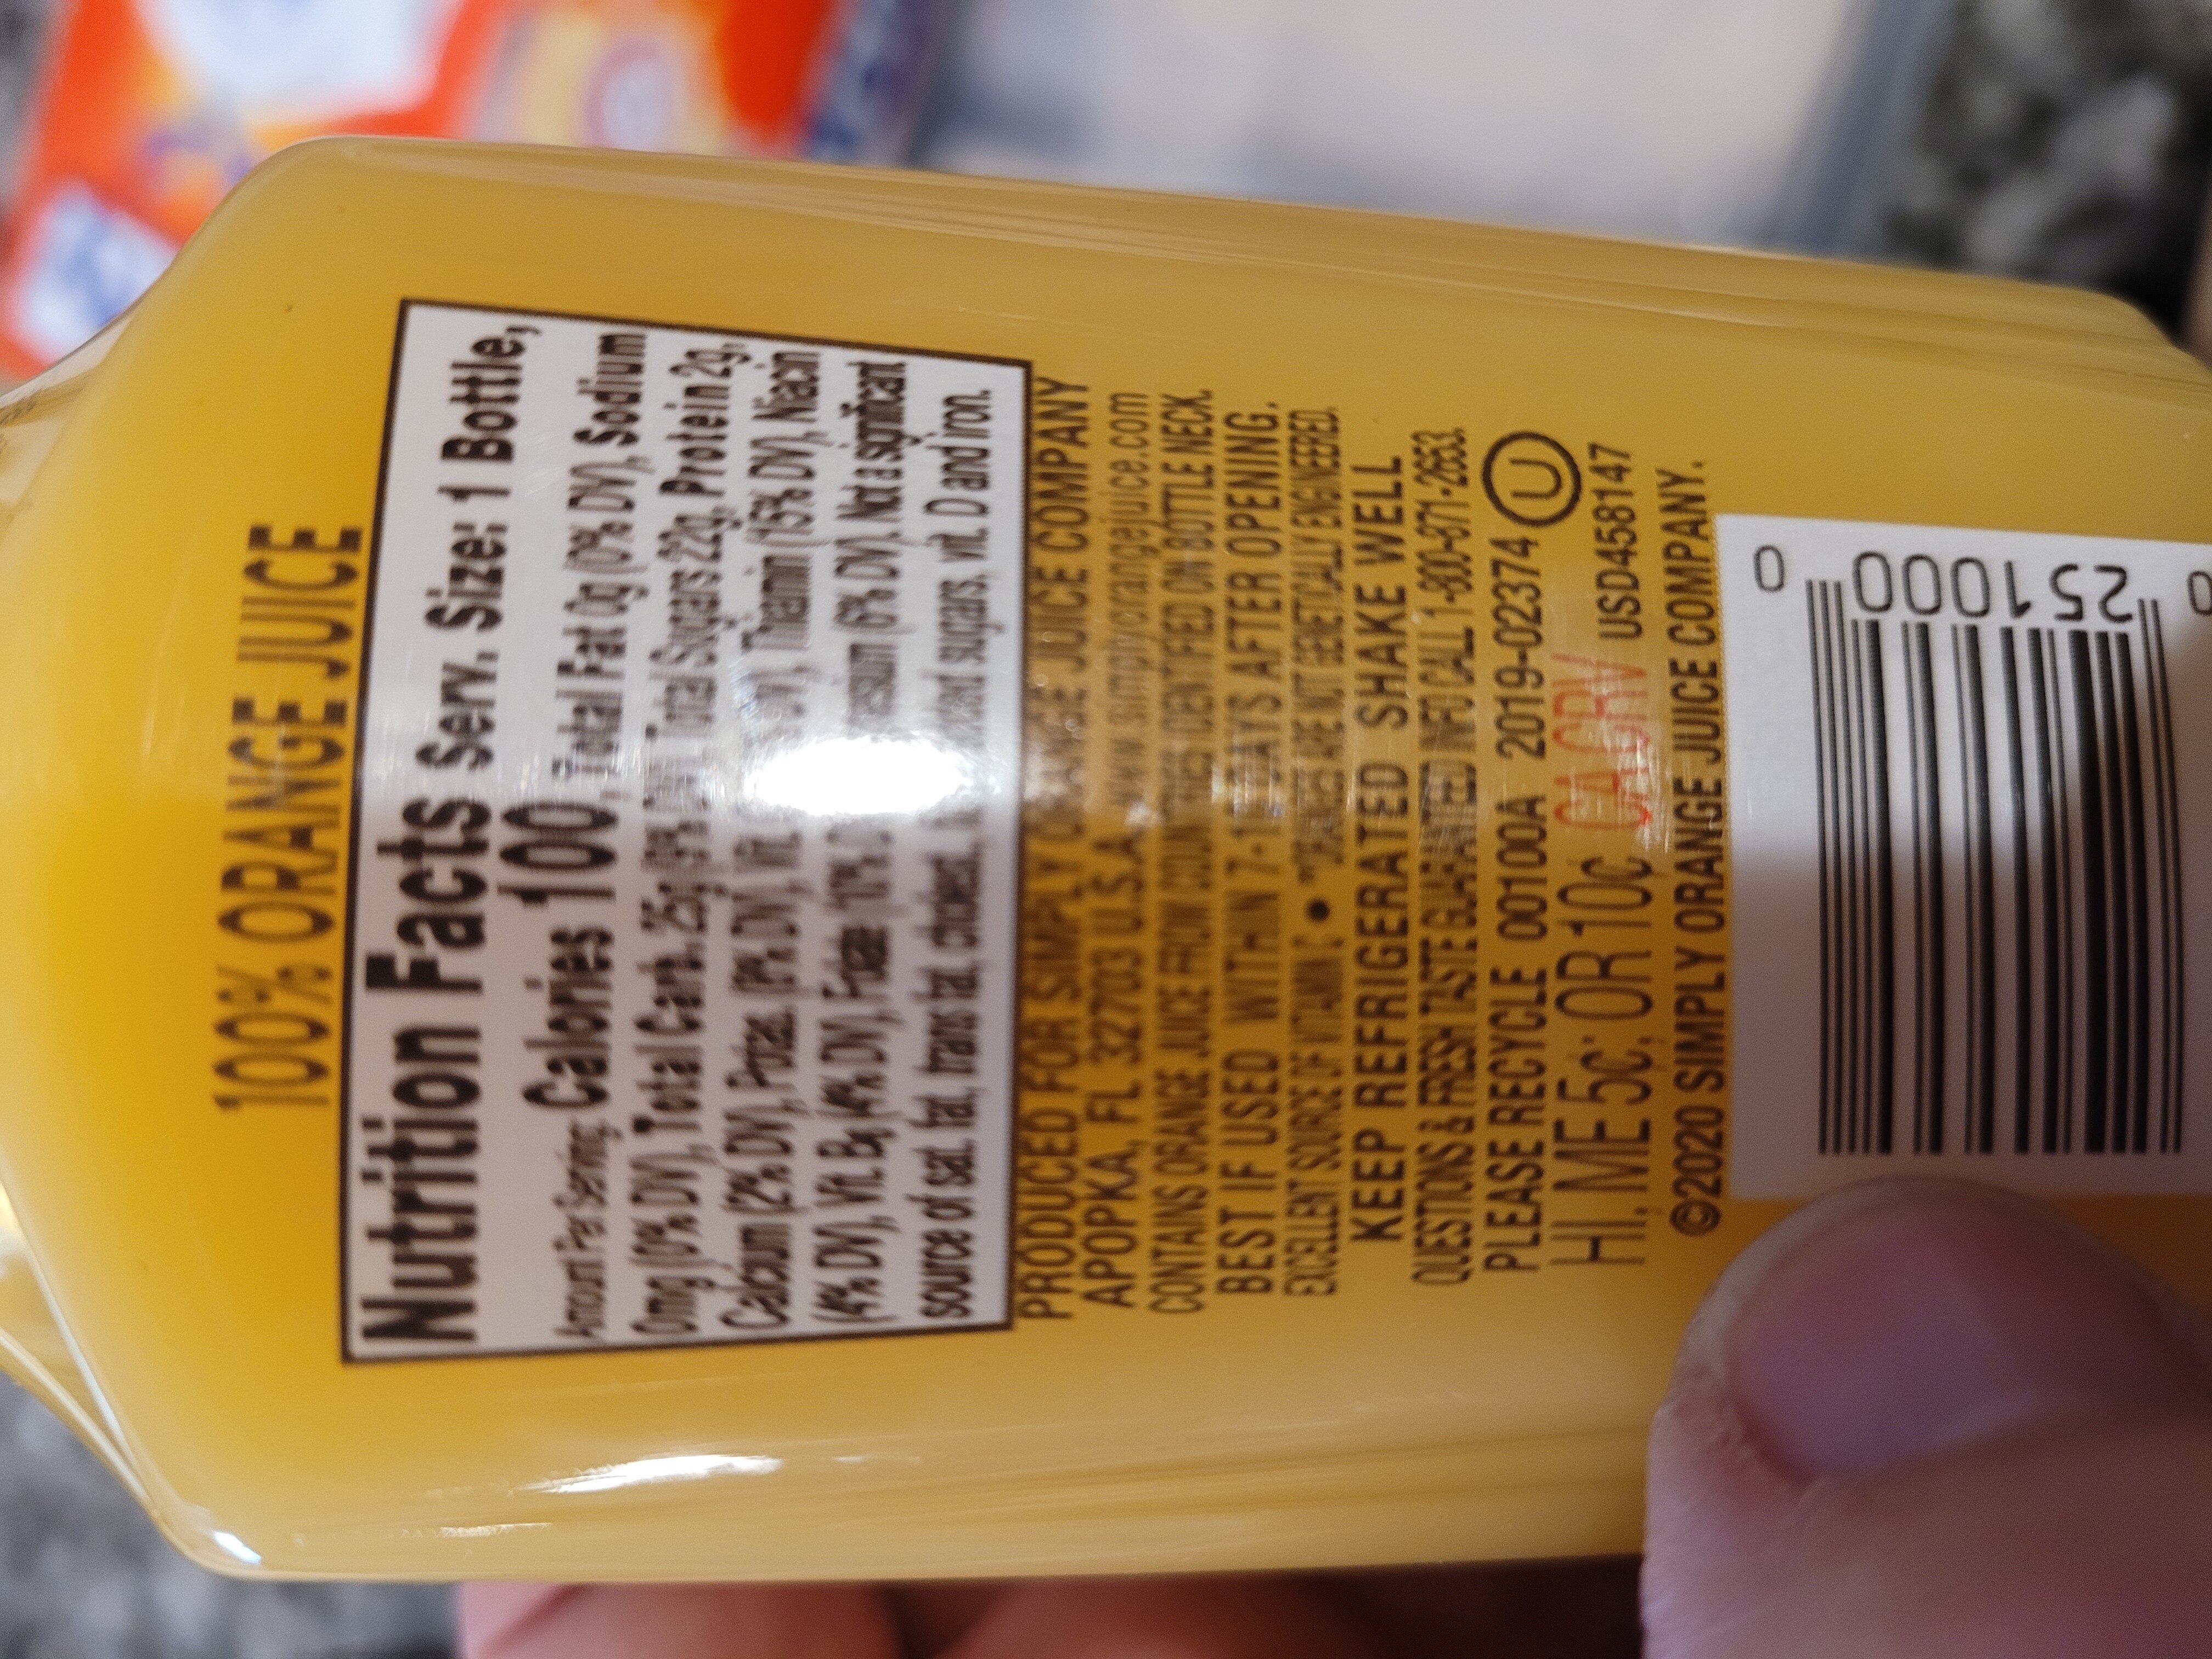 Simply Orange Juice - Ingredients